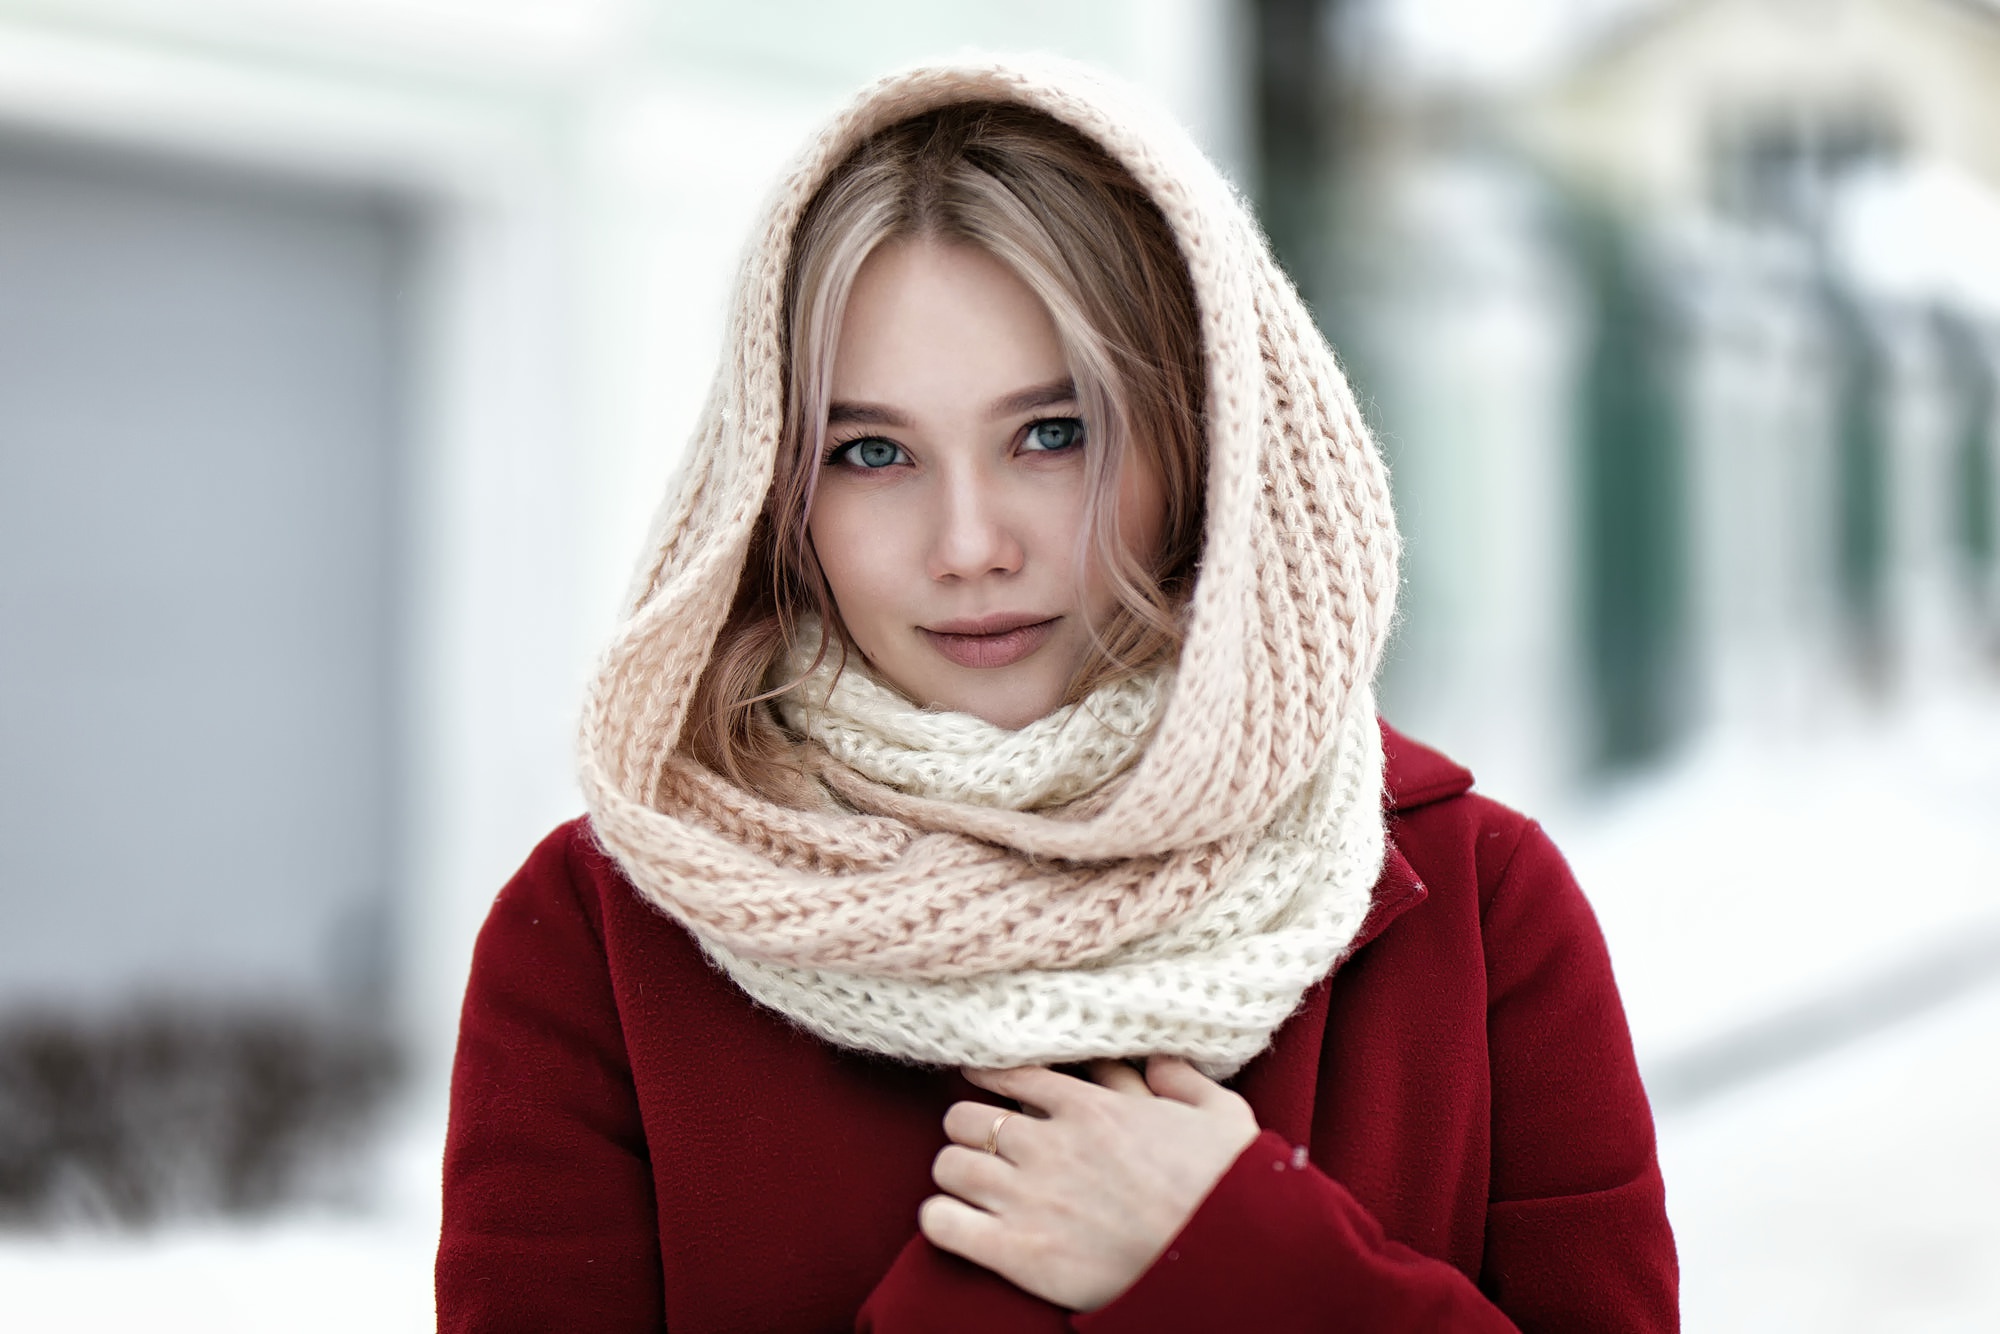 Влияние шарфа на образ человека в современном мире